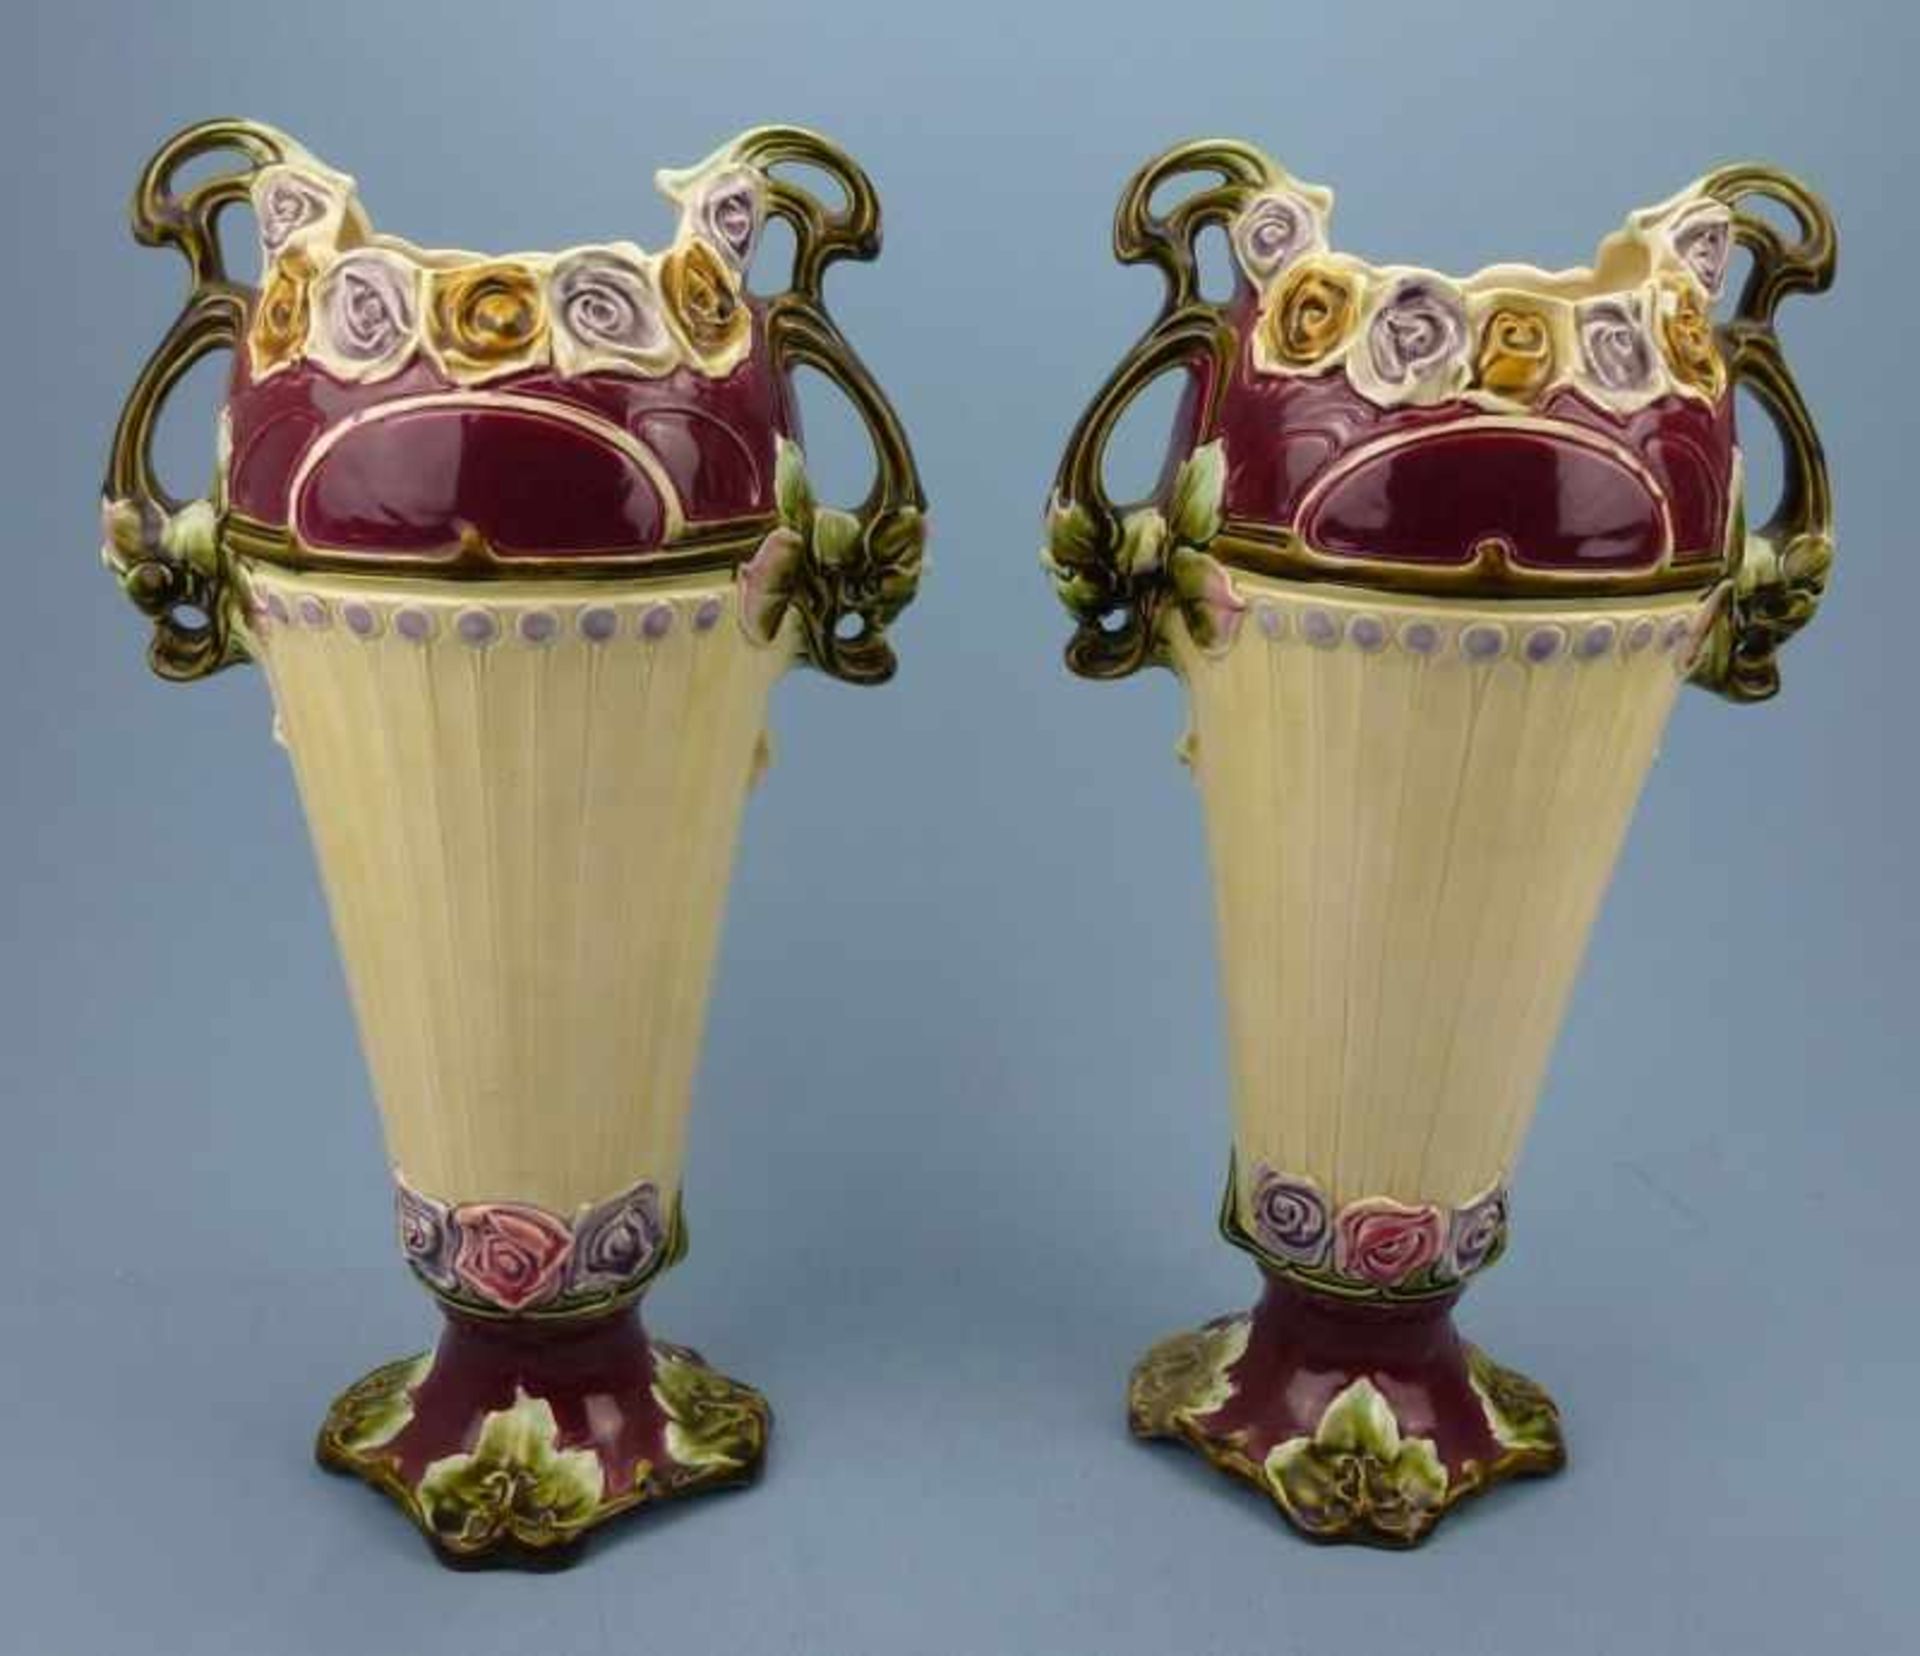 Paar Jugendstil-Vasen, Frankreich, um 1900 Fayence, gefußte, konische Amphore,Blütenrelief,